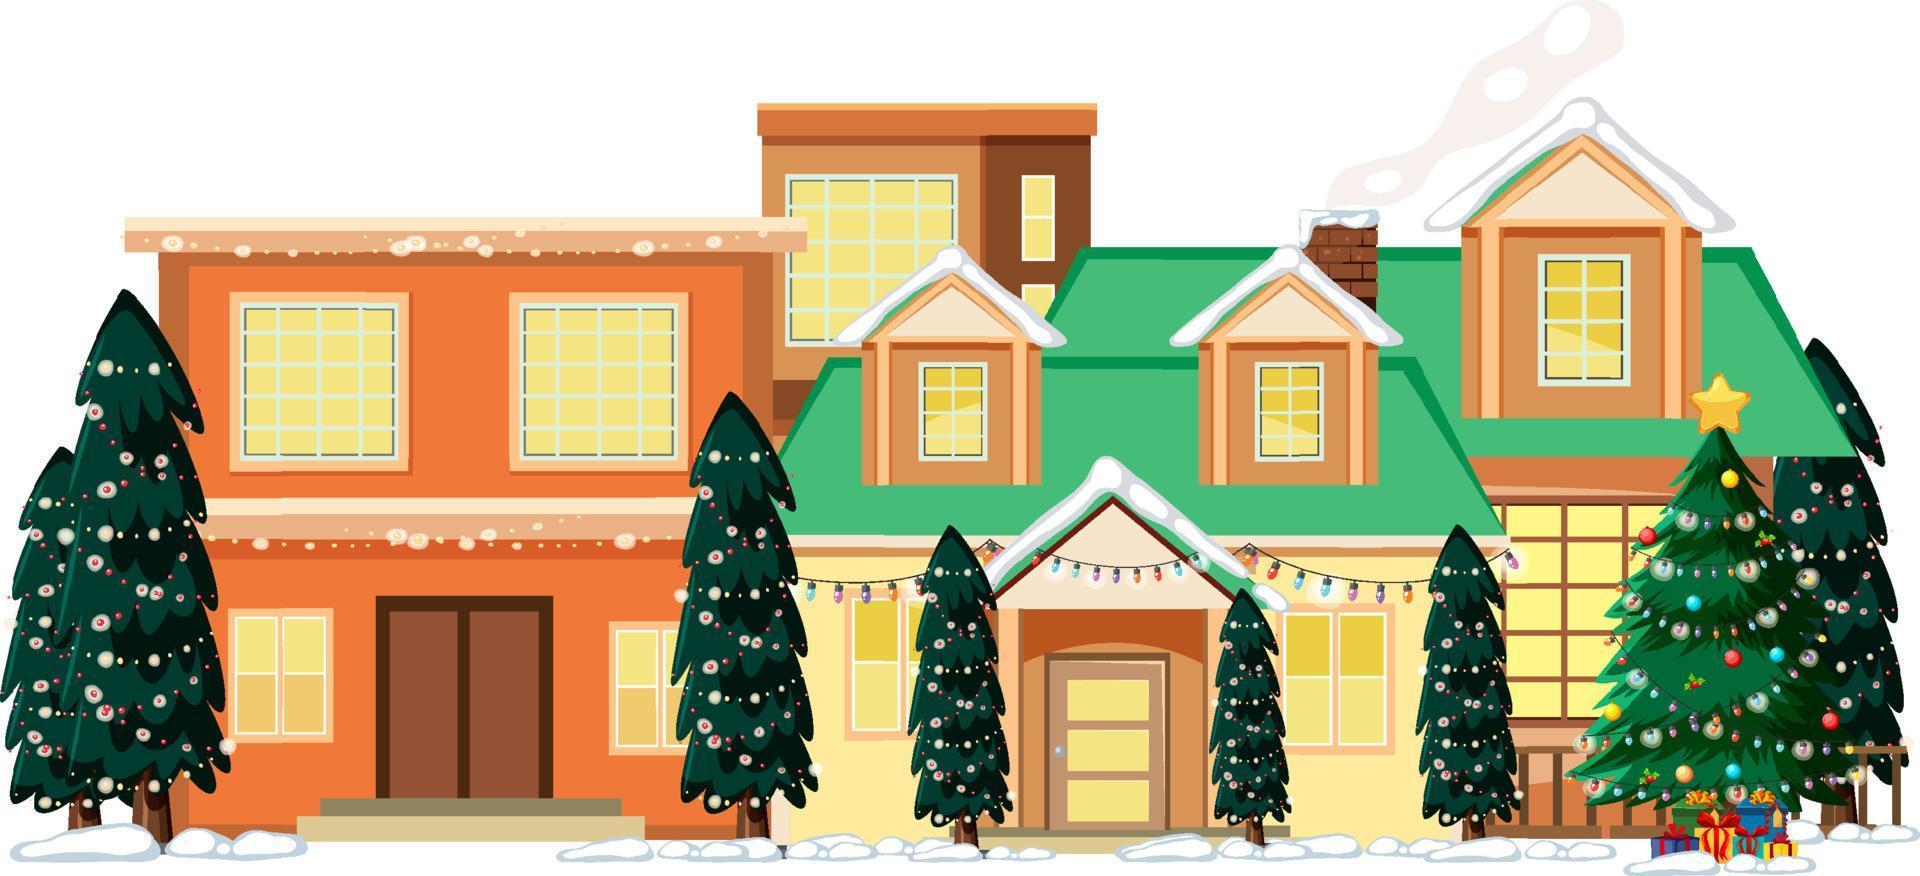 Christmas season with house and Christmas trees vector